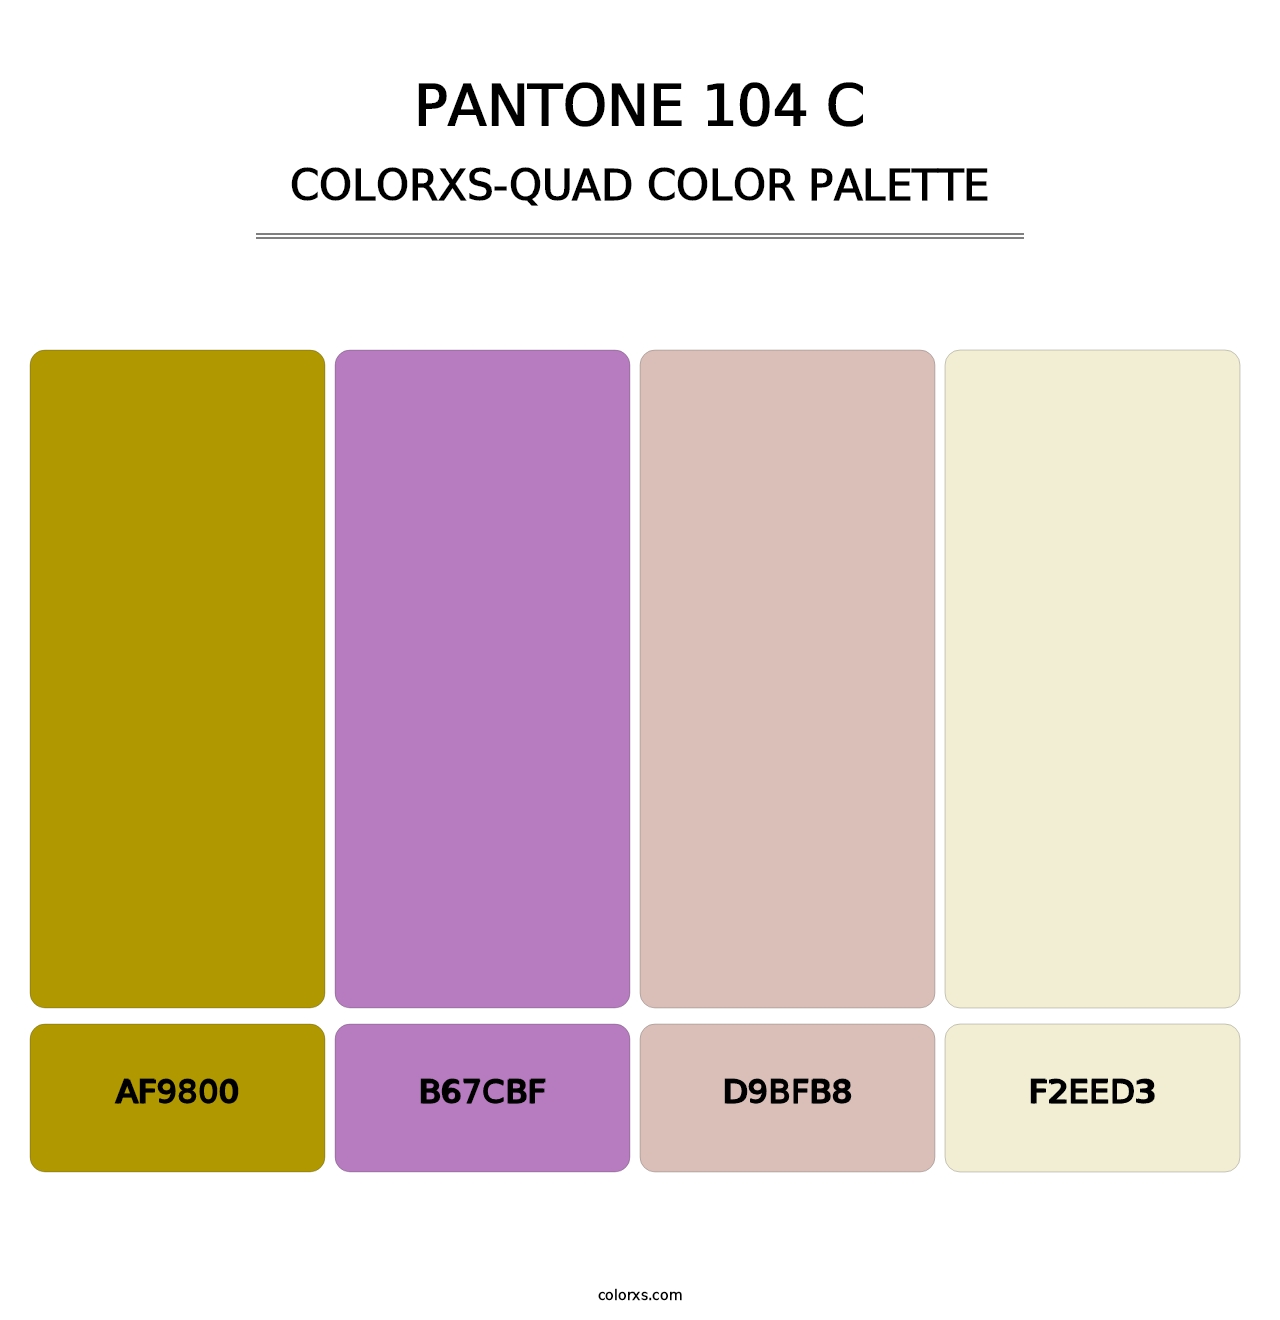 PANTONE 104 C - Colorxs Quad Palette